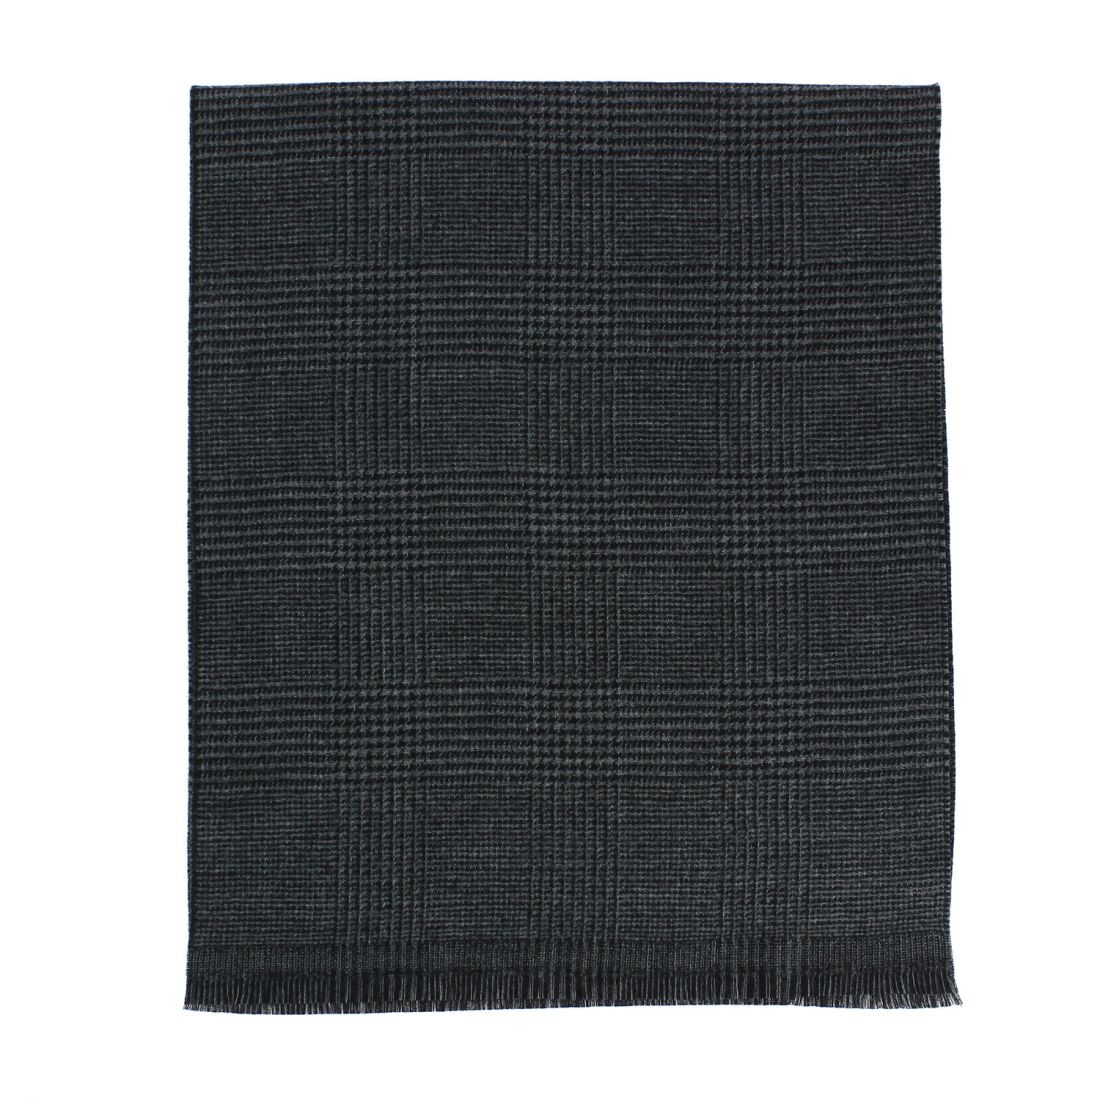 Echarpe Stirling noire en laine, Bicolore. Tony & Paul